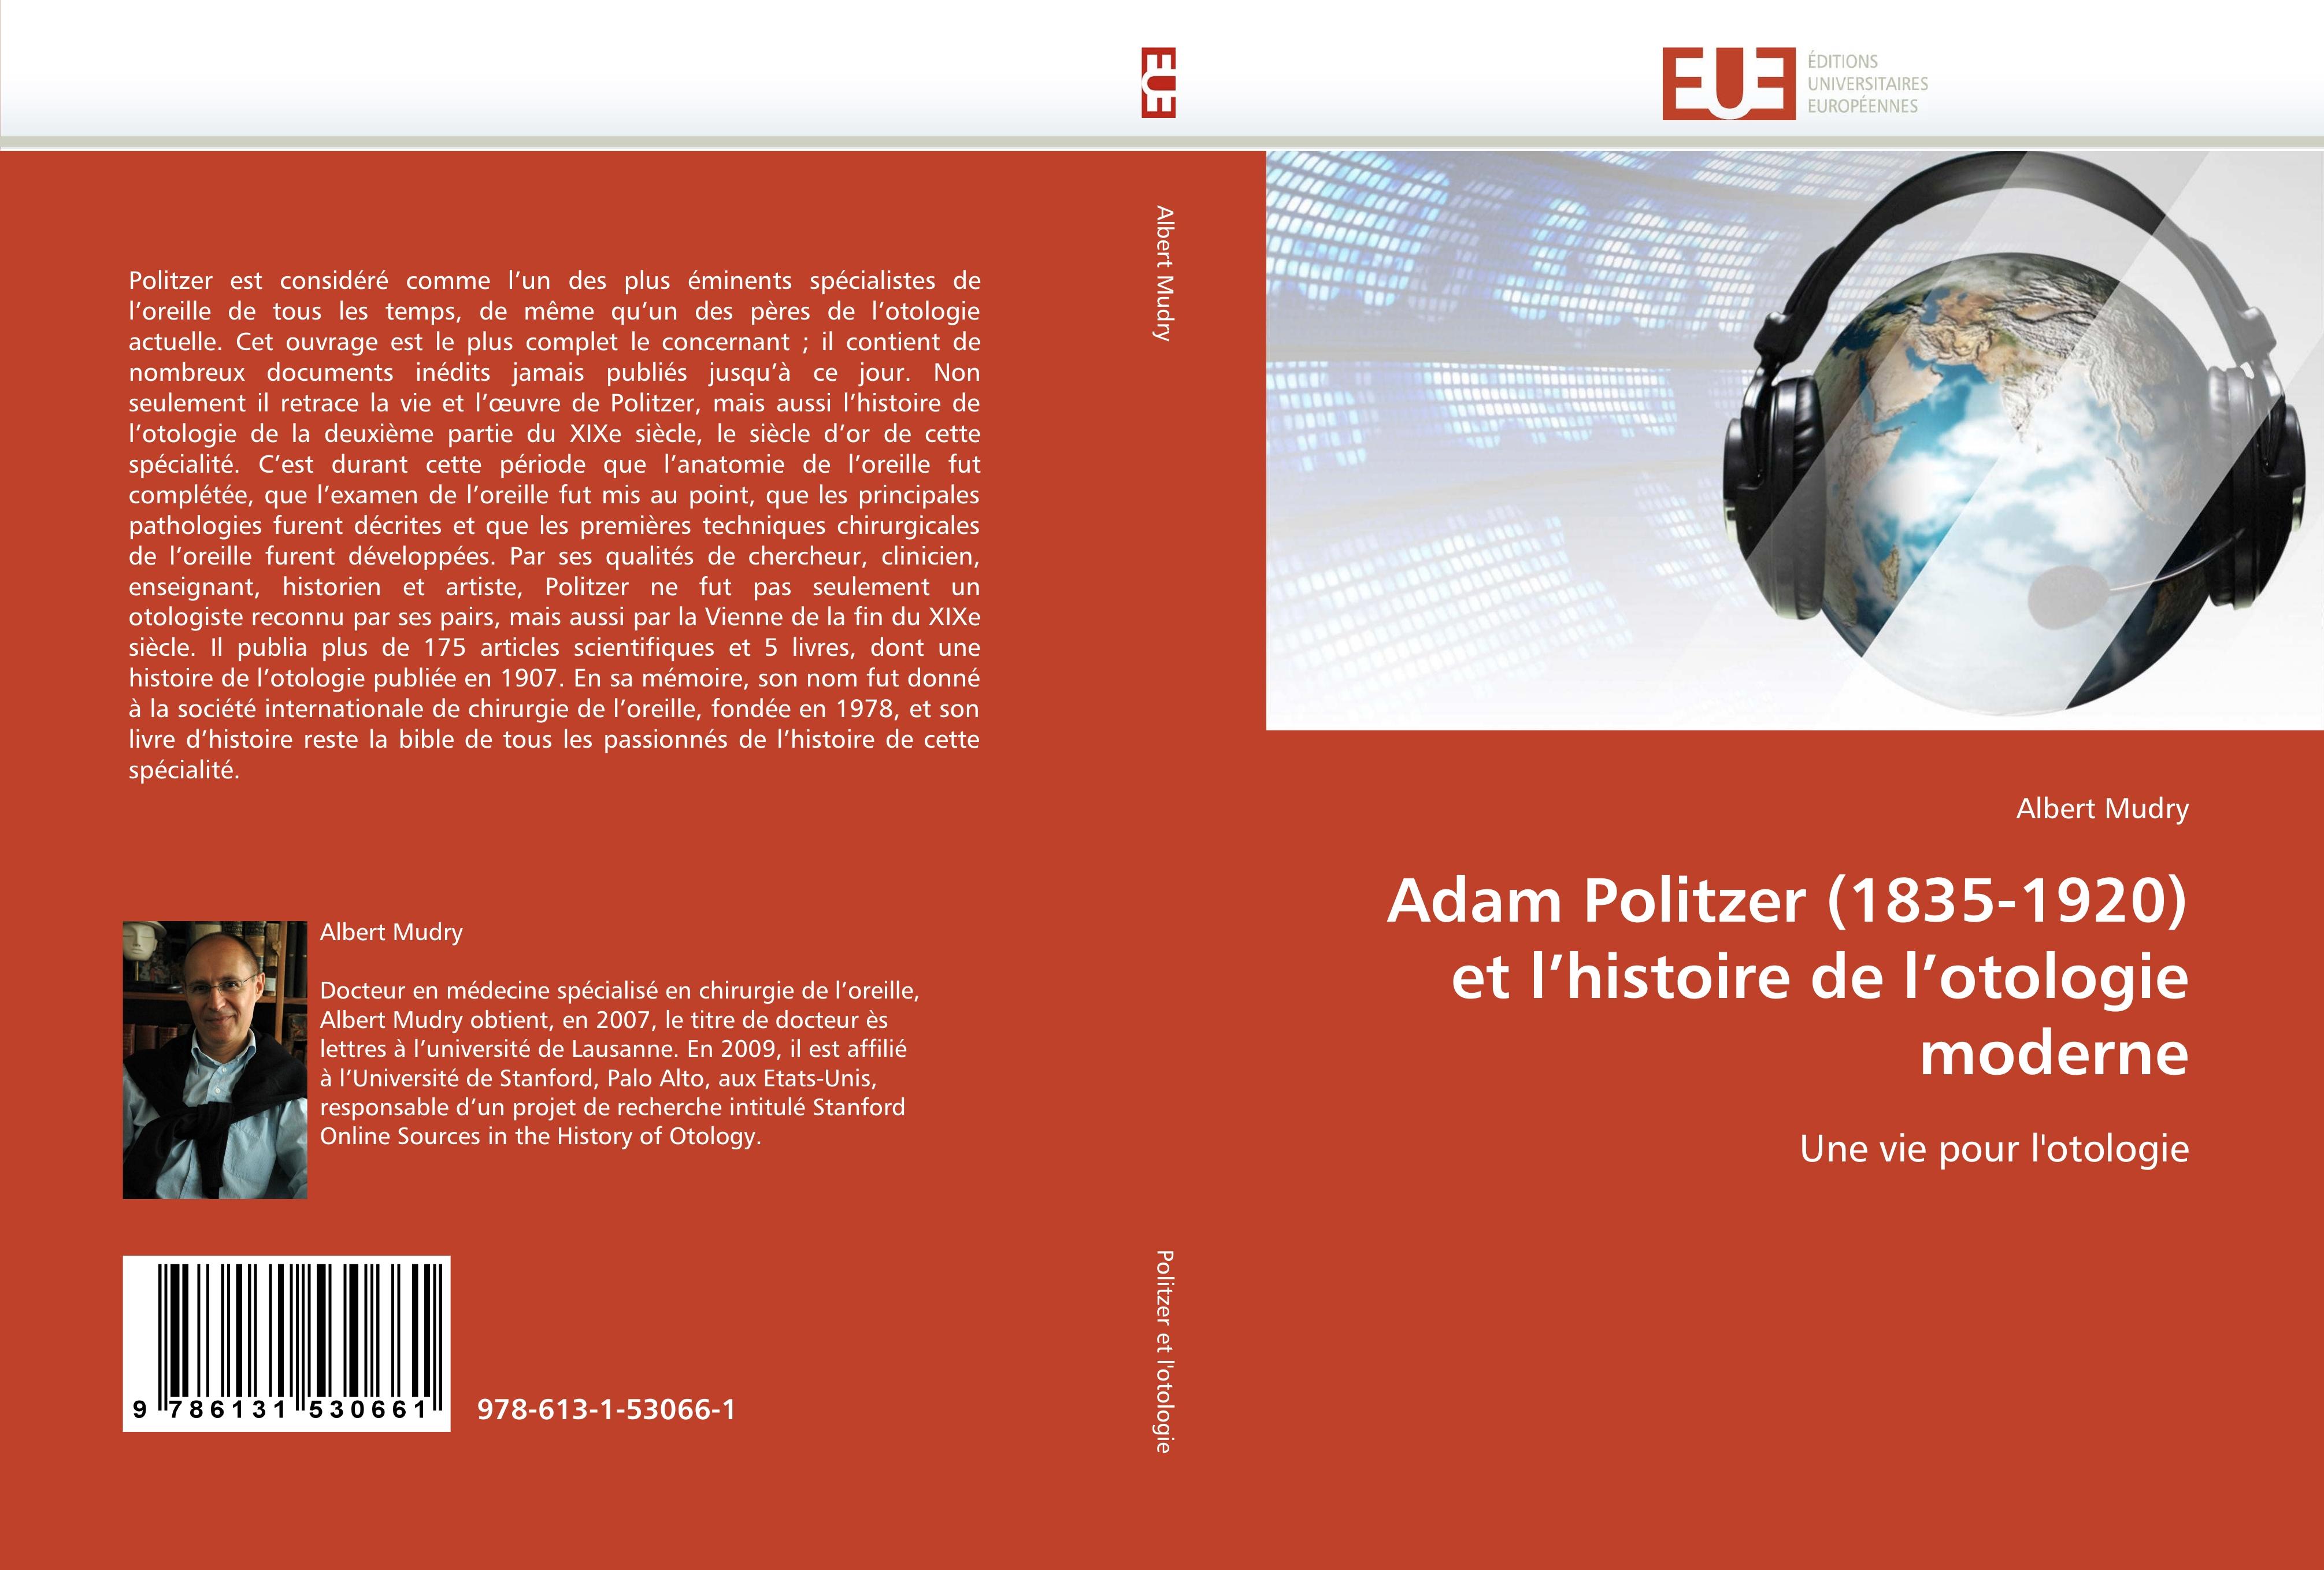 Adam Politzer (1835-1920) et l''histoire de l''otologie moderne / Mudry-A / Taschenbuch / Omn.Univ.Europ / Französisch / 2018 / ED UNIVERSITAIRES EUROPEENNES / EAN 9786131530661 - Mudry-A